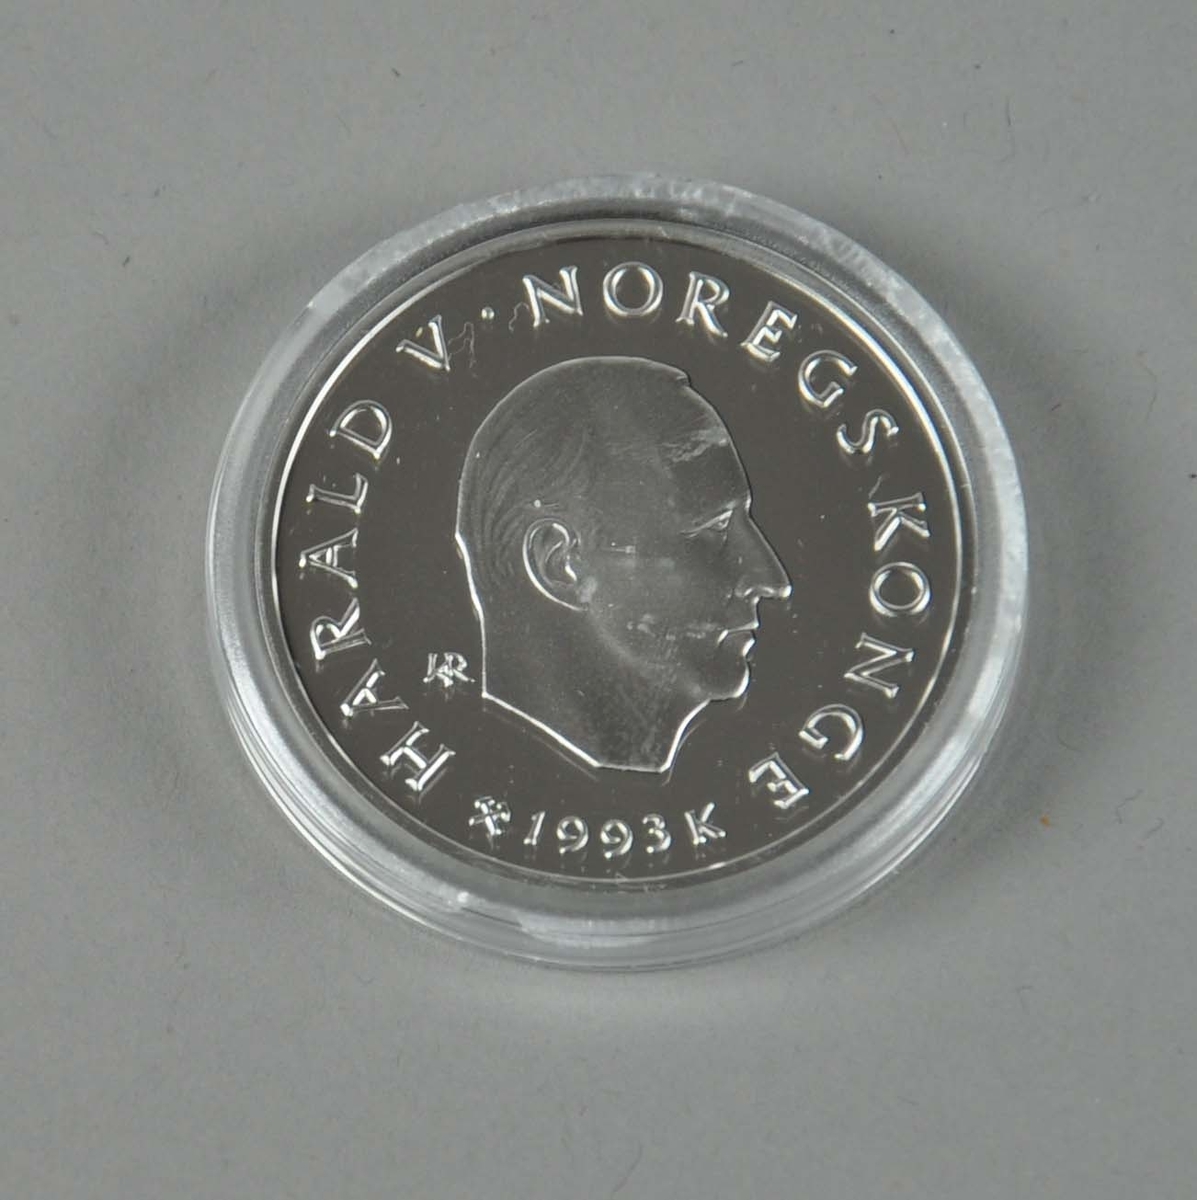 50-kr mynt med logo for Lillehammer-'94 og tre turskigåere på den ene siden og profilen til kong Olav V på den andre siden.